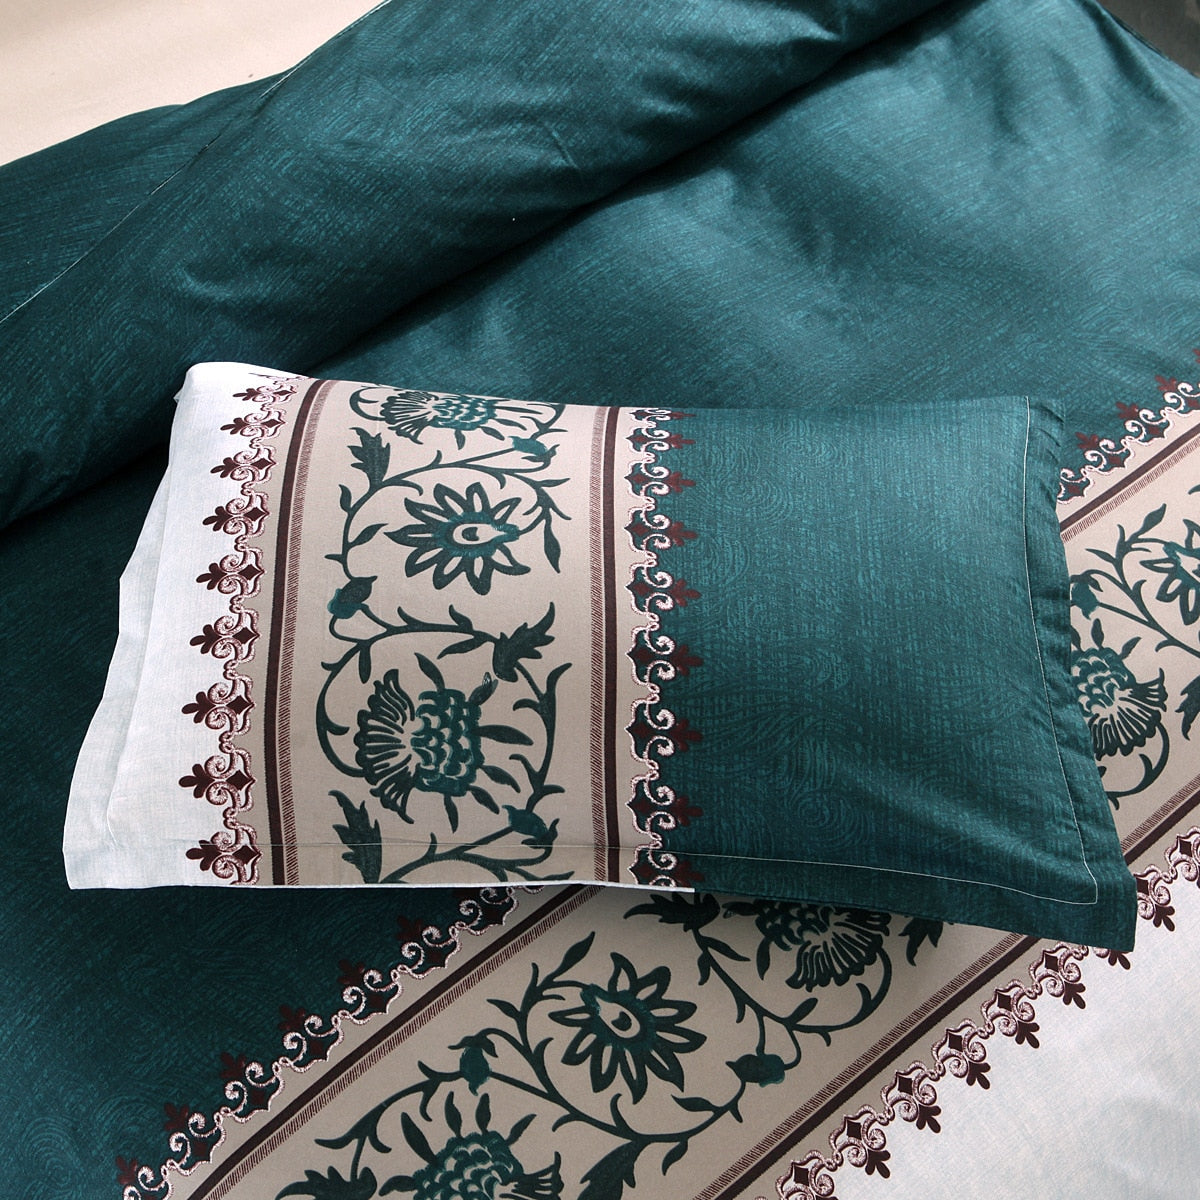 HomTe Bohemia style Duvet Cover plain color pattern retro style 2/3pcs Duvet Cover Sets Soft Polyester Bed Linen Flat Pillowcase - Textile